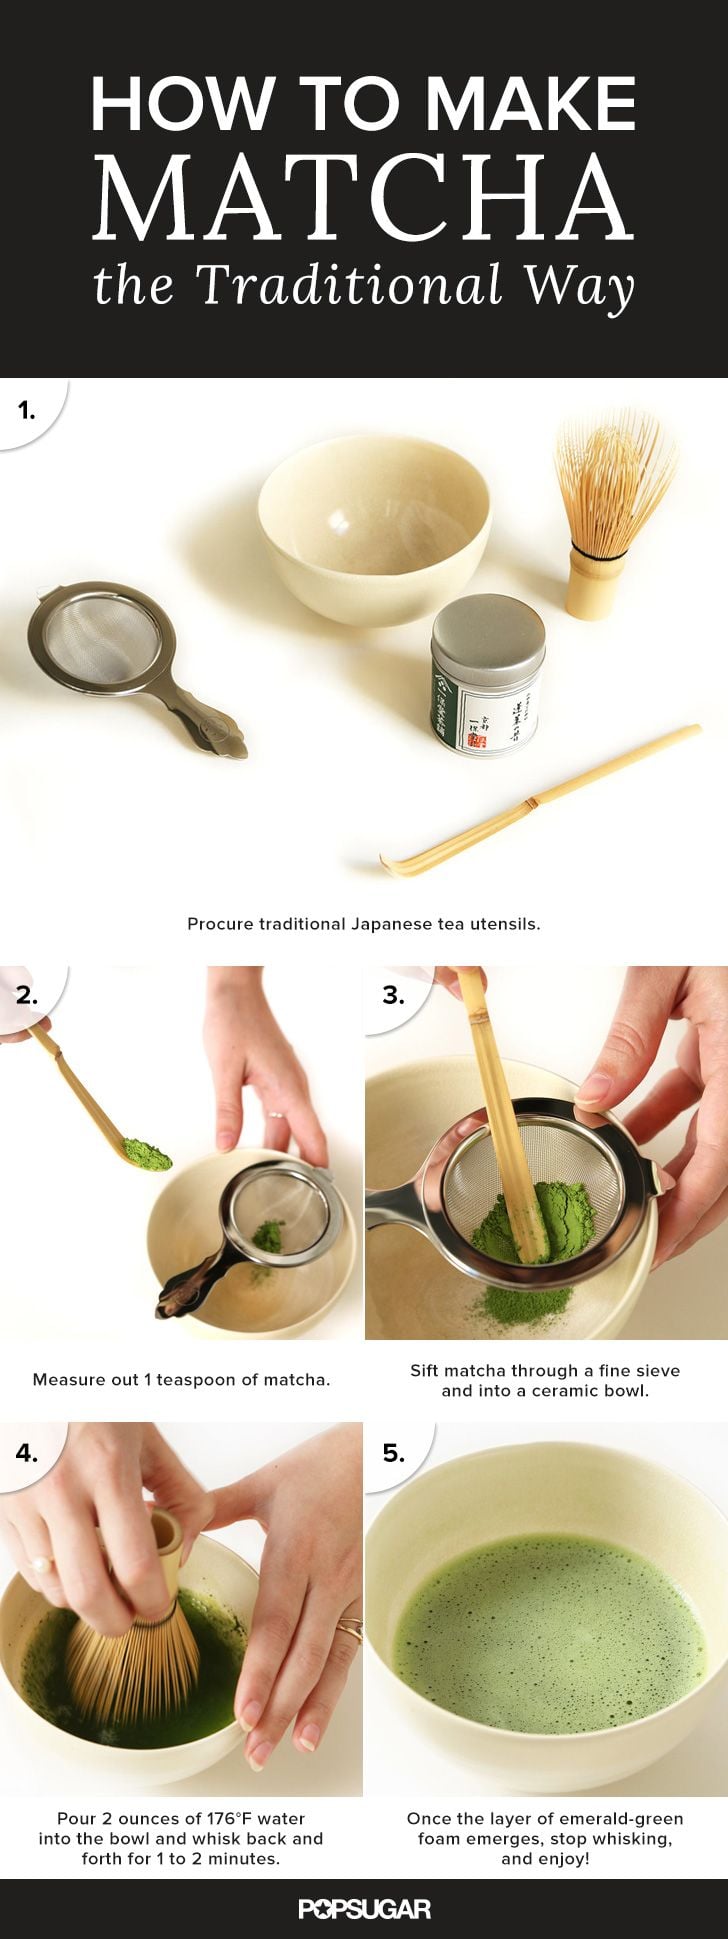 How to Make Matcha Tea